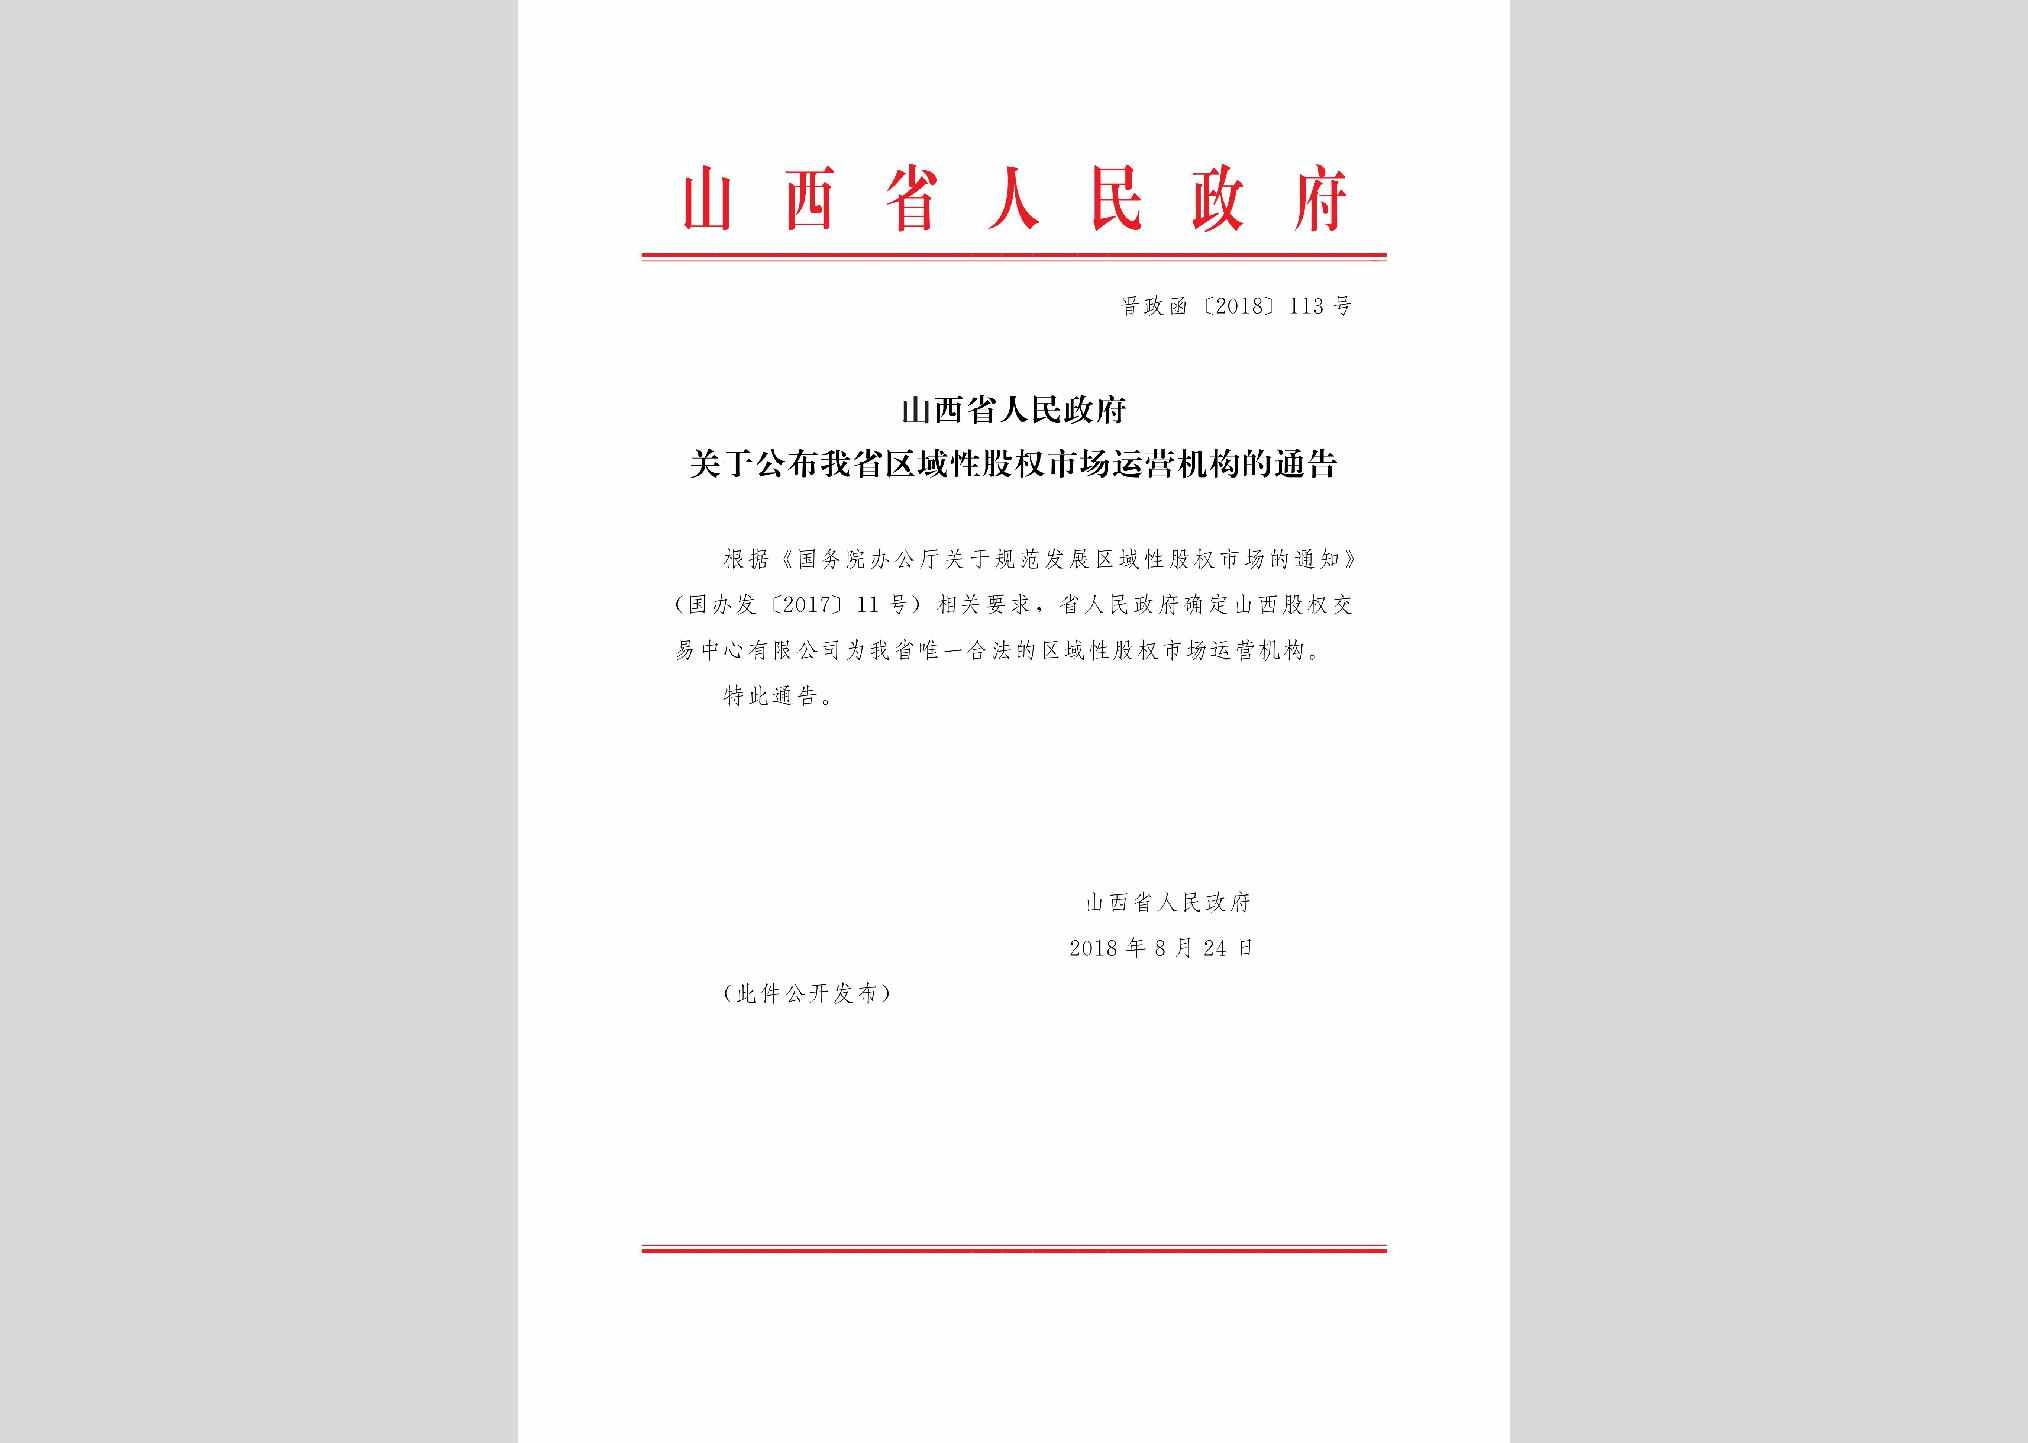 晋政函[2018]113号：山西省人民政府关于公布我省区域性股权市场运营机构的通告